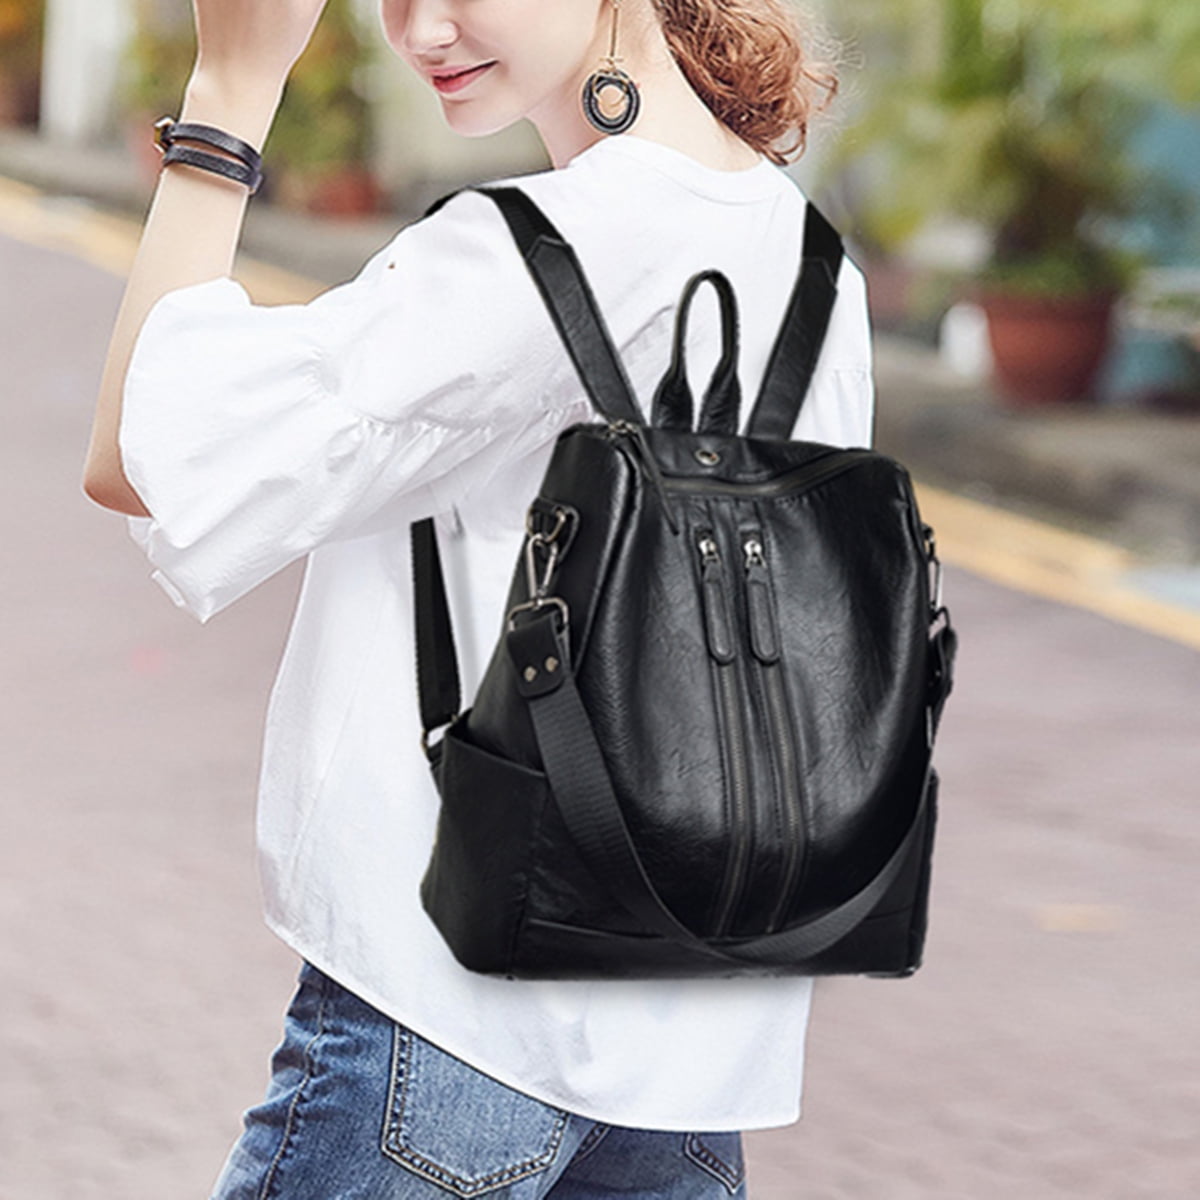 Women Black Leather Travel Backpack Handbag Shoulder School Bag Rucksack Satchel 